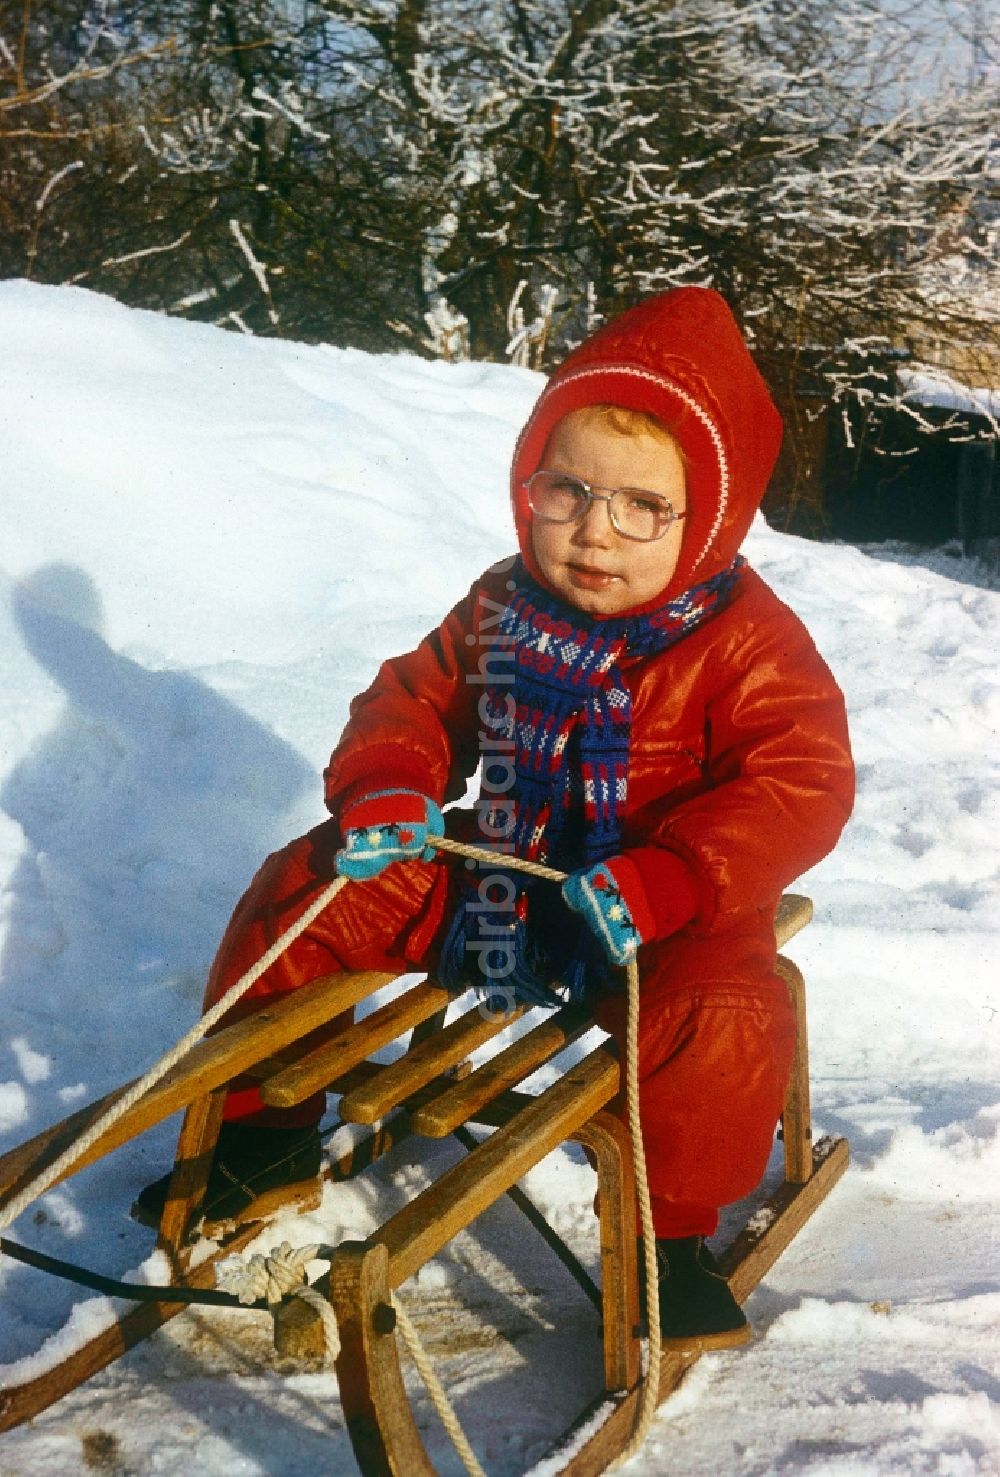 DDR-Fotoarchiv: Neustrelitz - Kleines Kind auf einem Schlitten im Schnee in Neustrelitz im Bundesland Mecklenburg-Vorpommern auf dem Gebiet der ehemaligen DDR, Deutsche Demokratische Republik